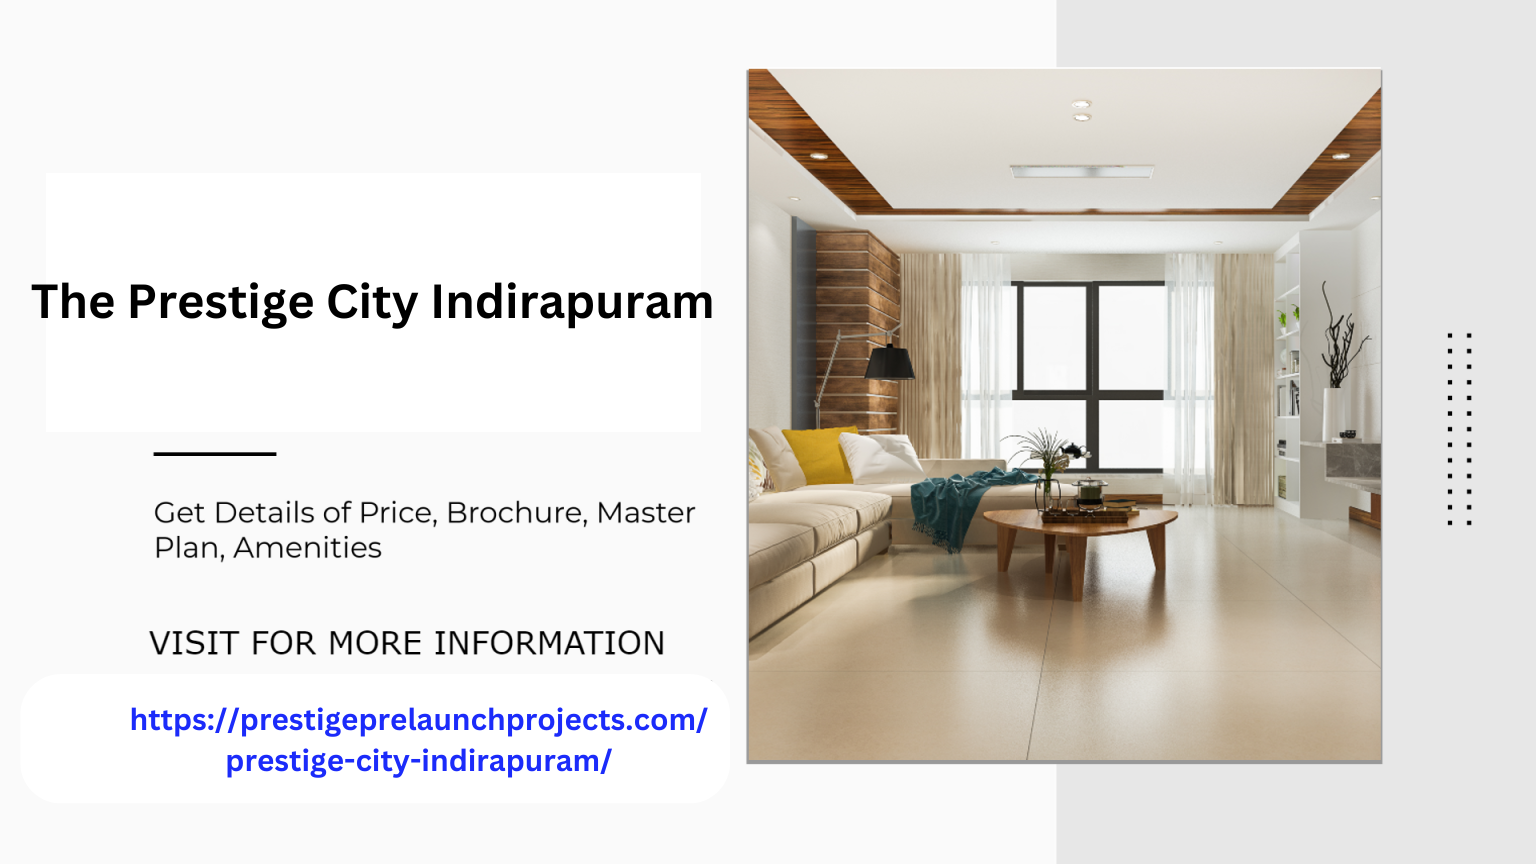 Prestige City Indirapuram